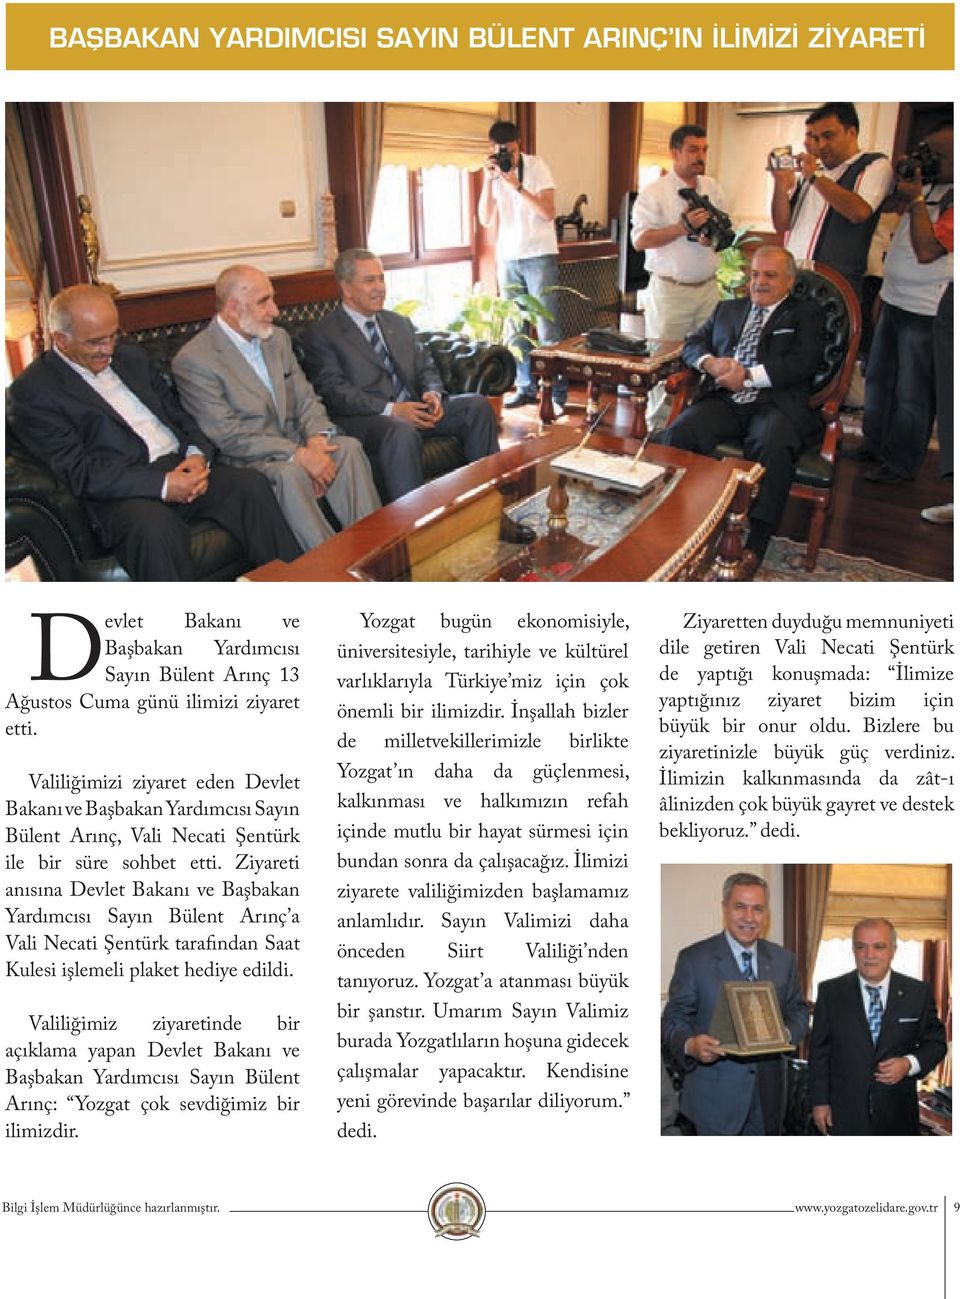 Ziyareti anısına Devlet Bakanı ve Başbakan Yardımcısı Sayın Bülent Arınç a Vali Necati Şentürk tarafından Saat Kulesi işlemeli plaket hediye edildi.